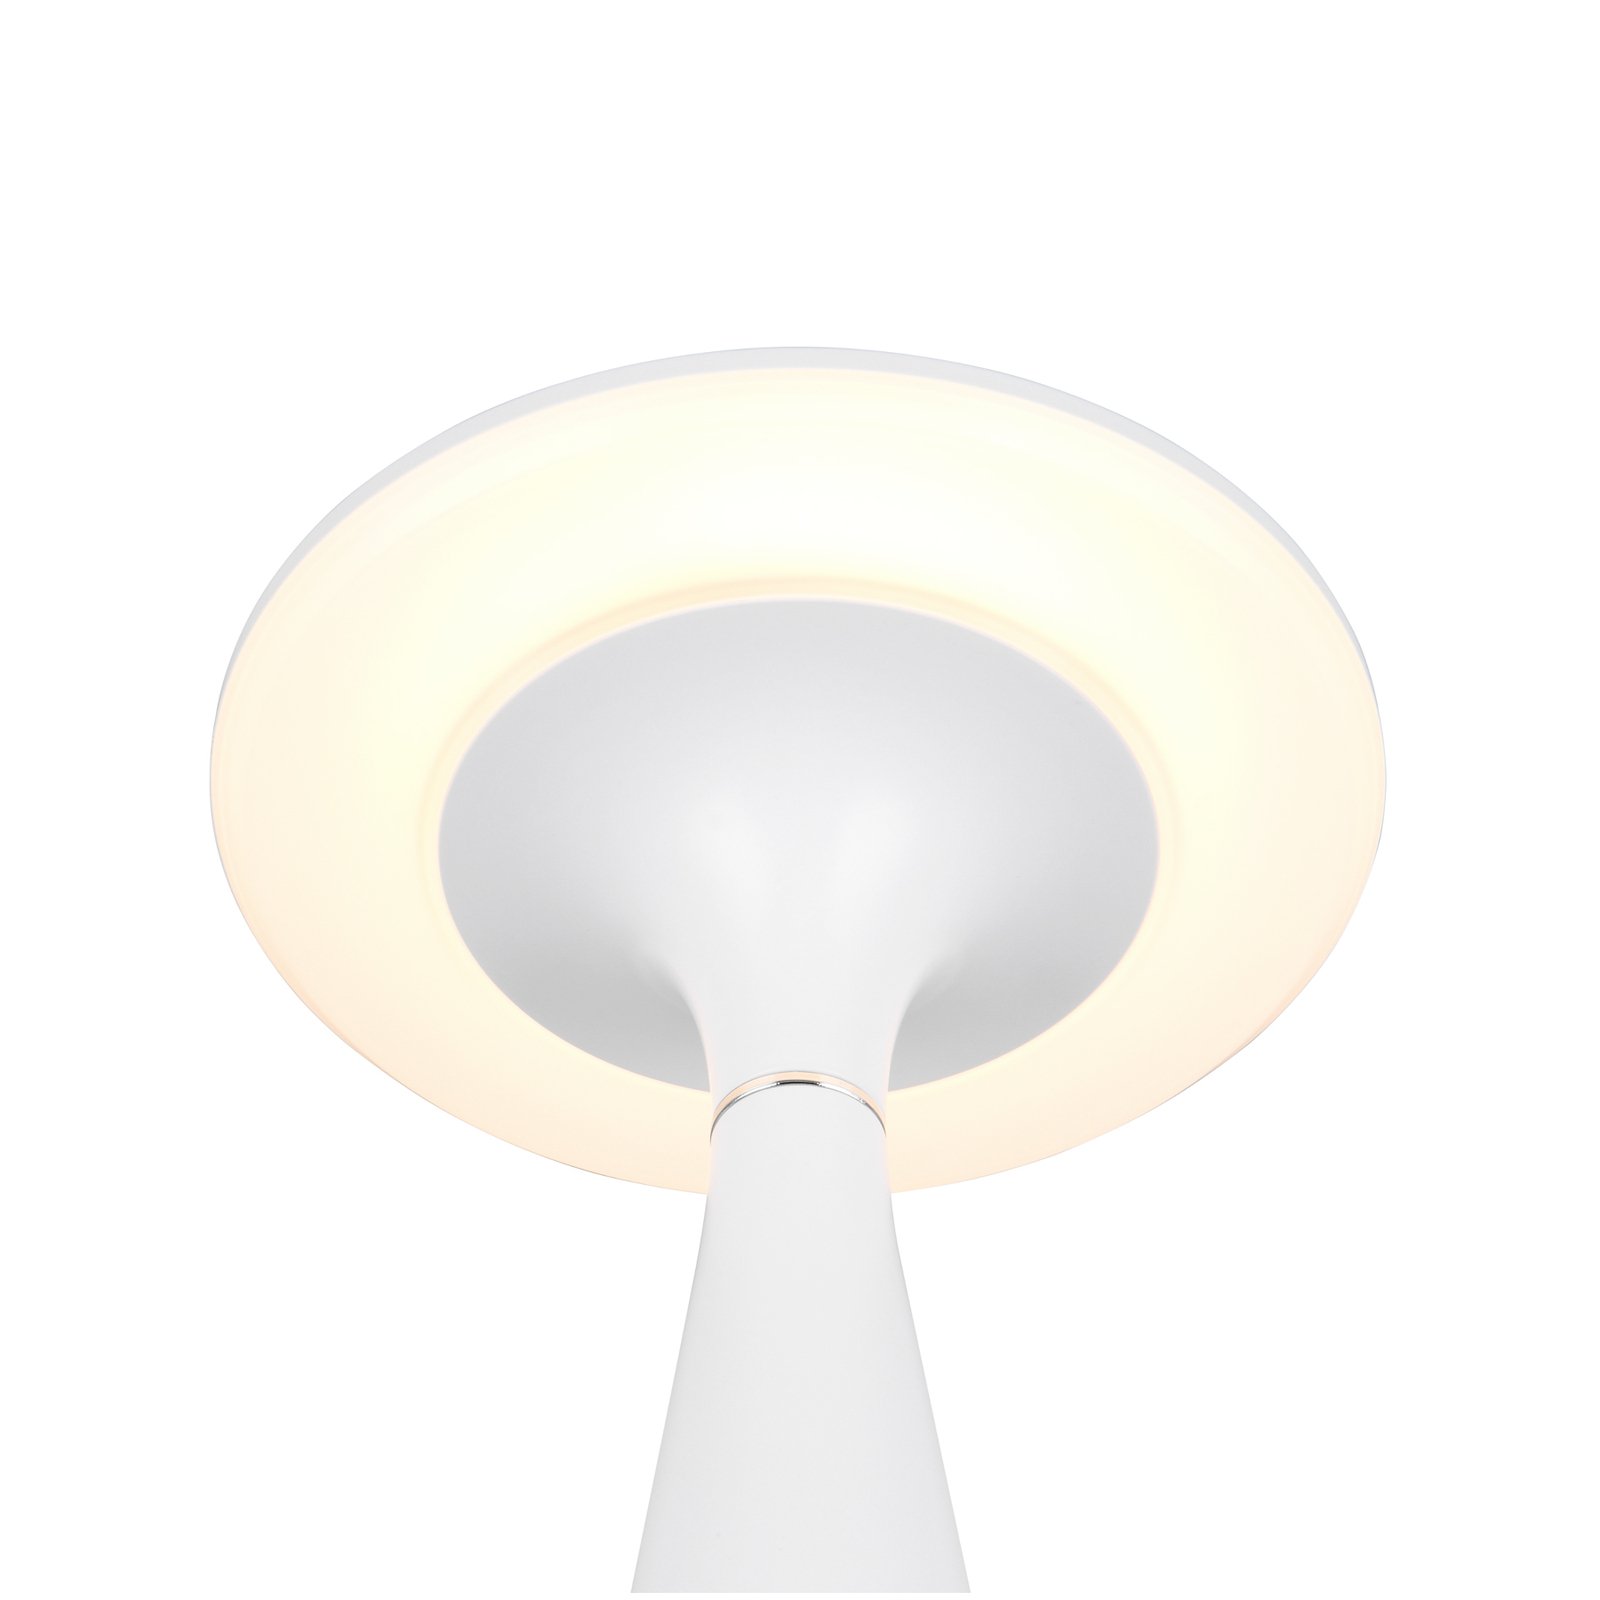 Torrez LED oppladbar bordlampe, hvit, høyde 28,5 cm, CCT